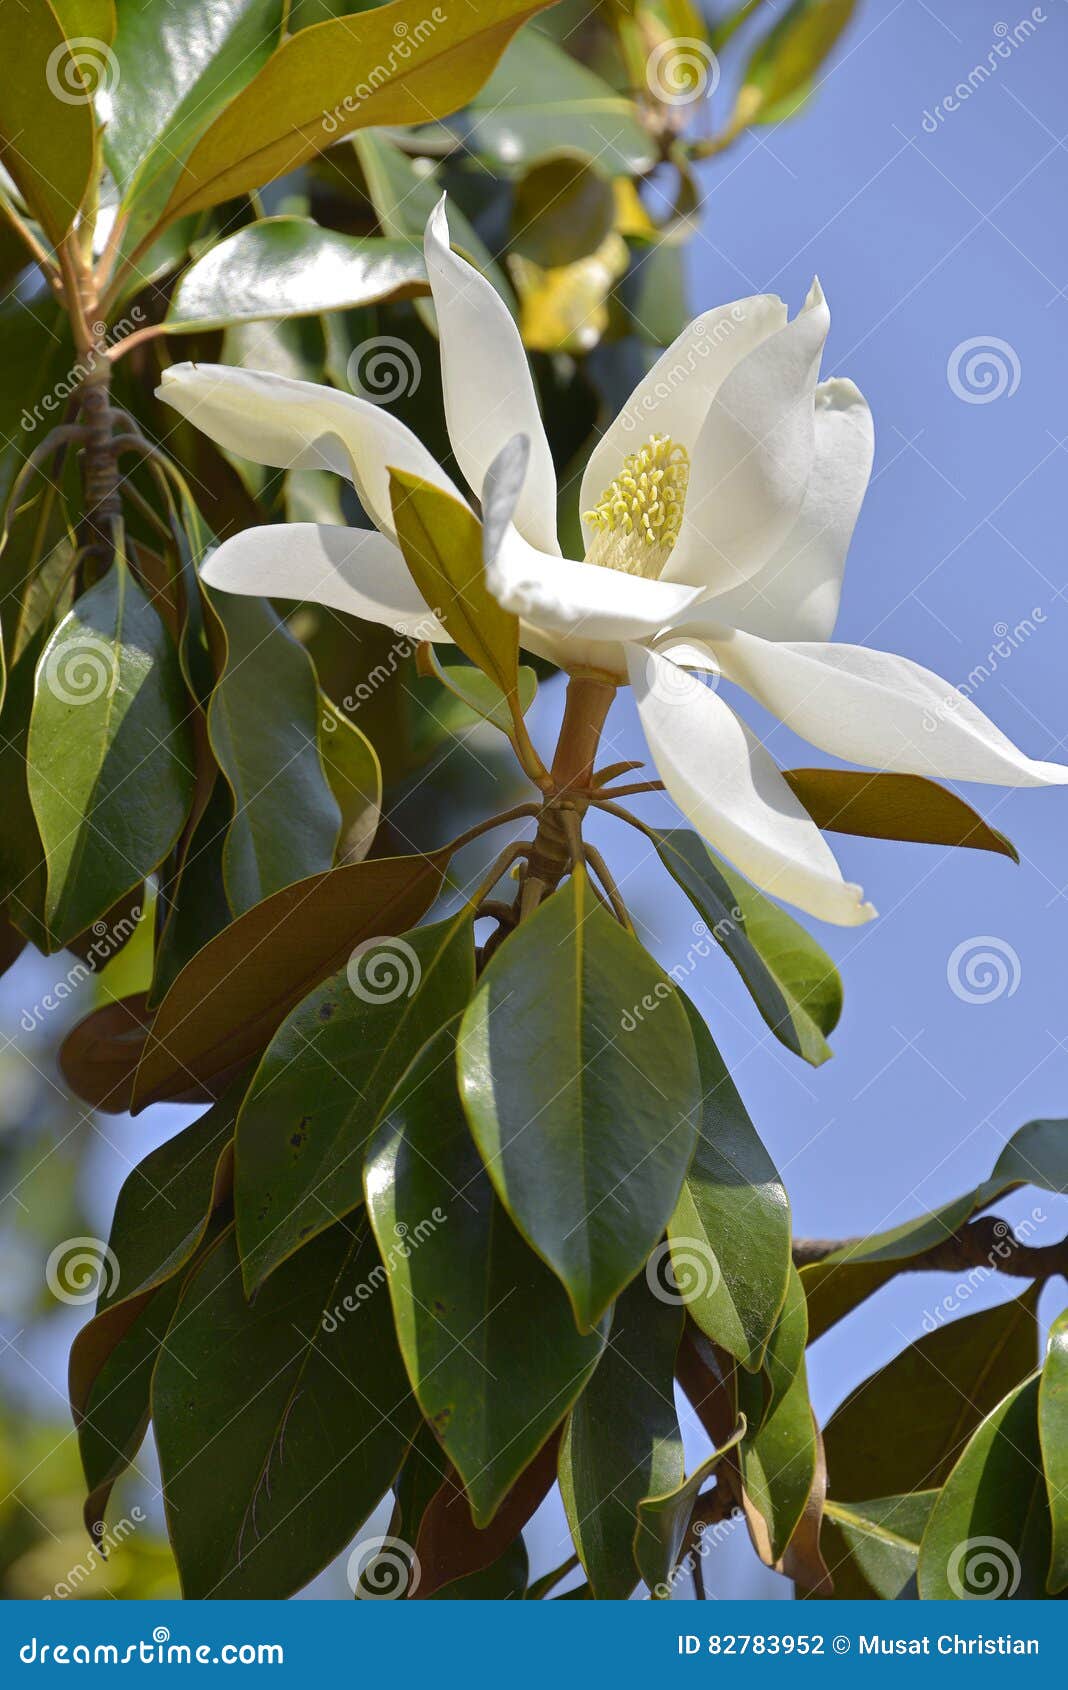 flower of magnolia grandiflora